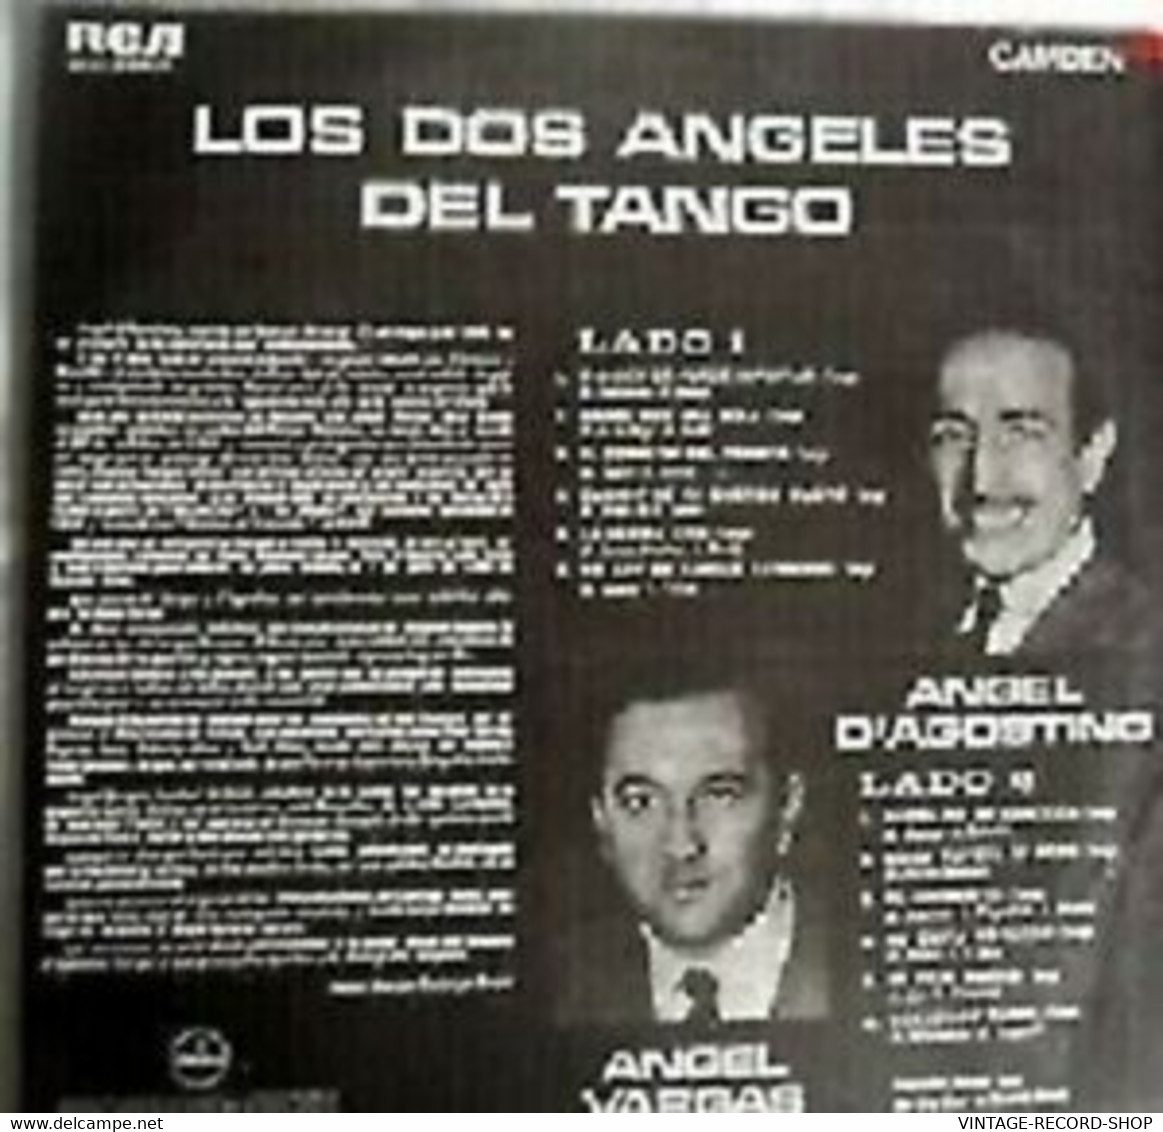 ANGEL DAGOSTINO ANGEL VARGAS-LOS DOS ANGELES DEL TANGO CAMDEN/RCA - Andere - Spaans